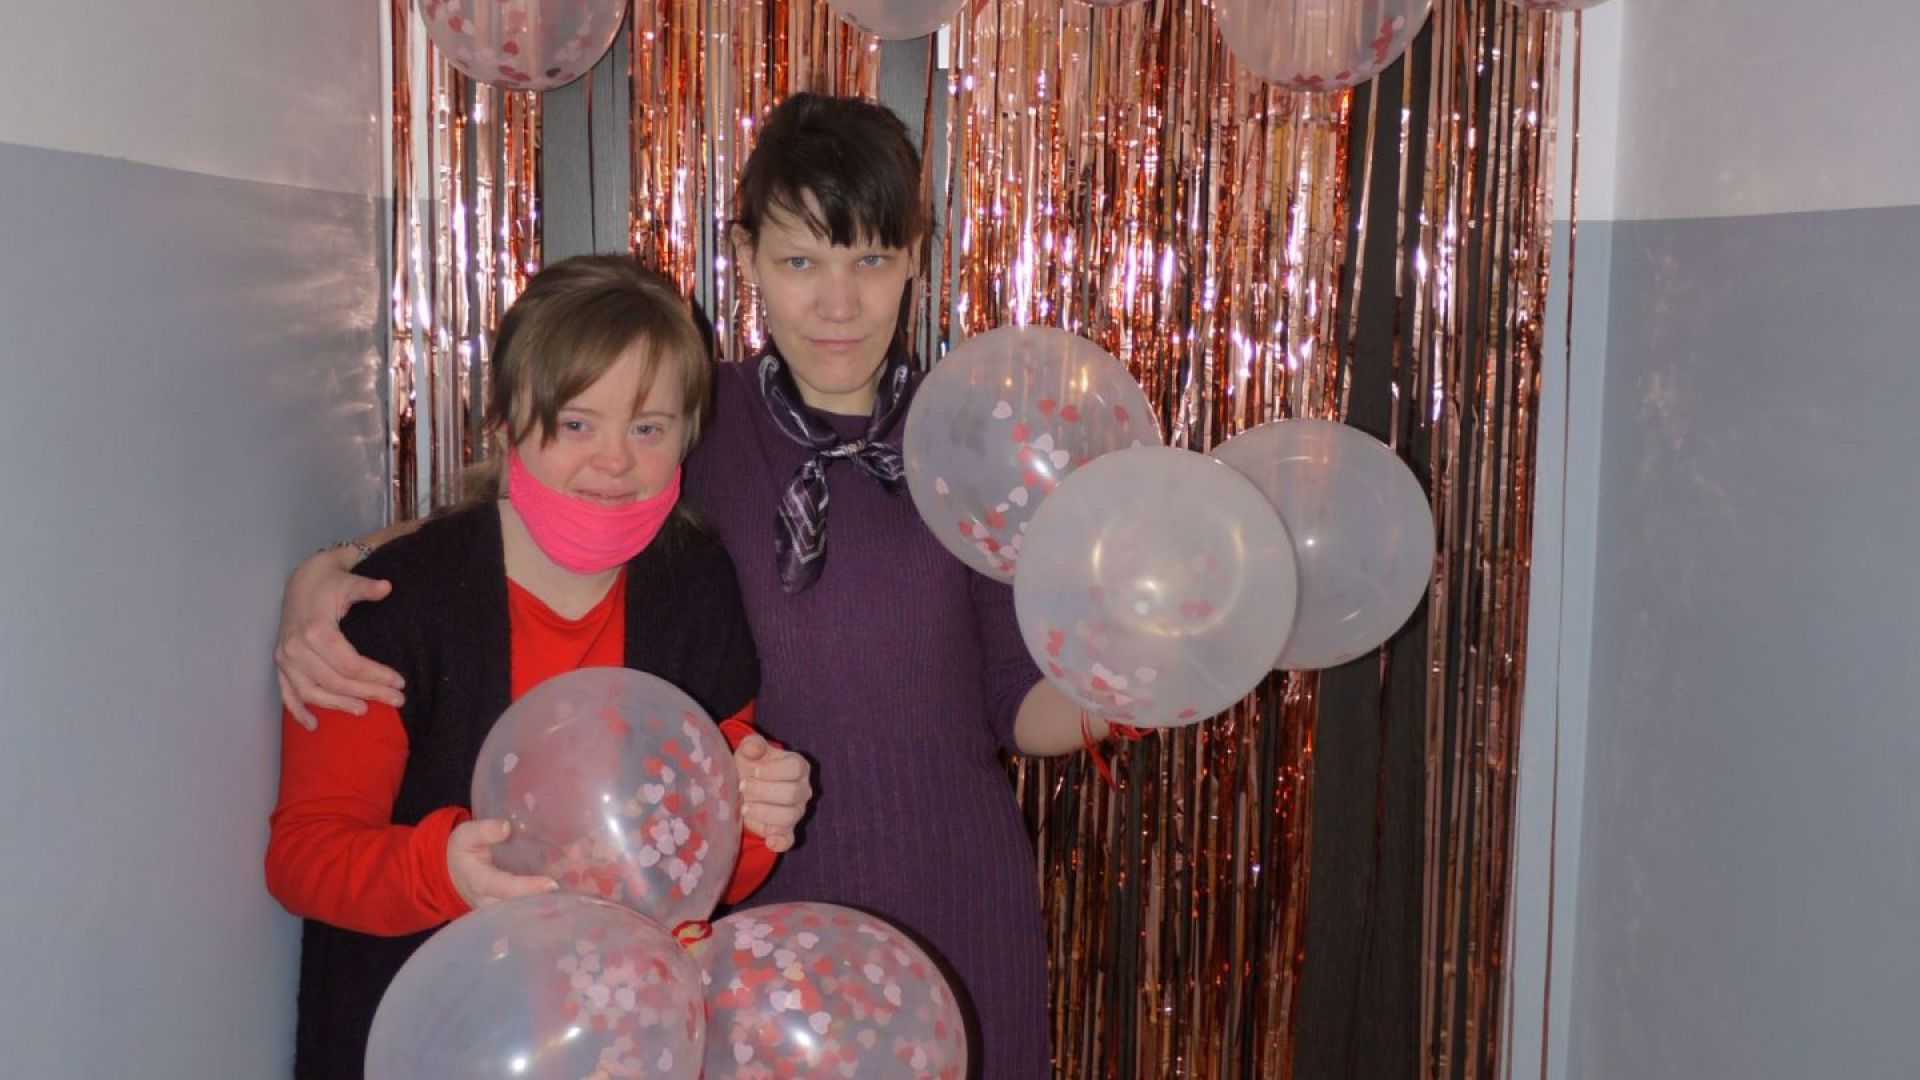 Martyna W. i Małgorzata W. pozujące na ściance udekorowanej serpentynami, balonami i serduszkami. W rękach trzymają balony.